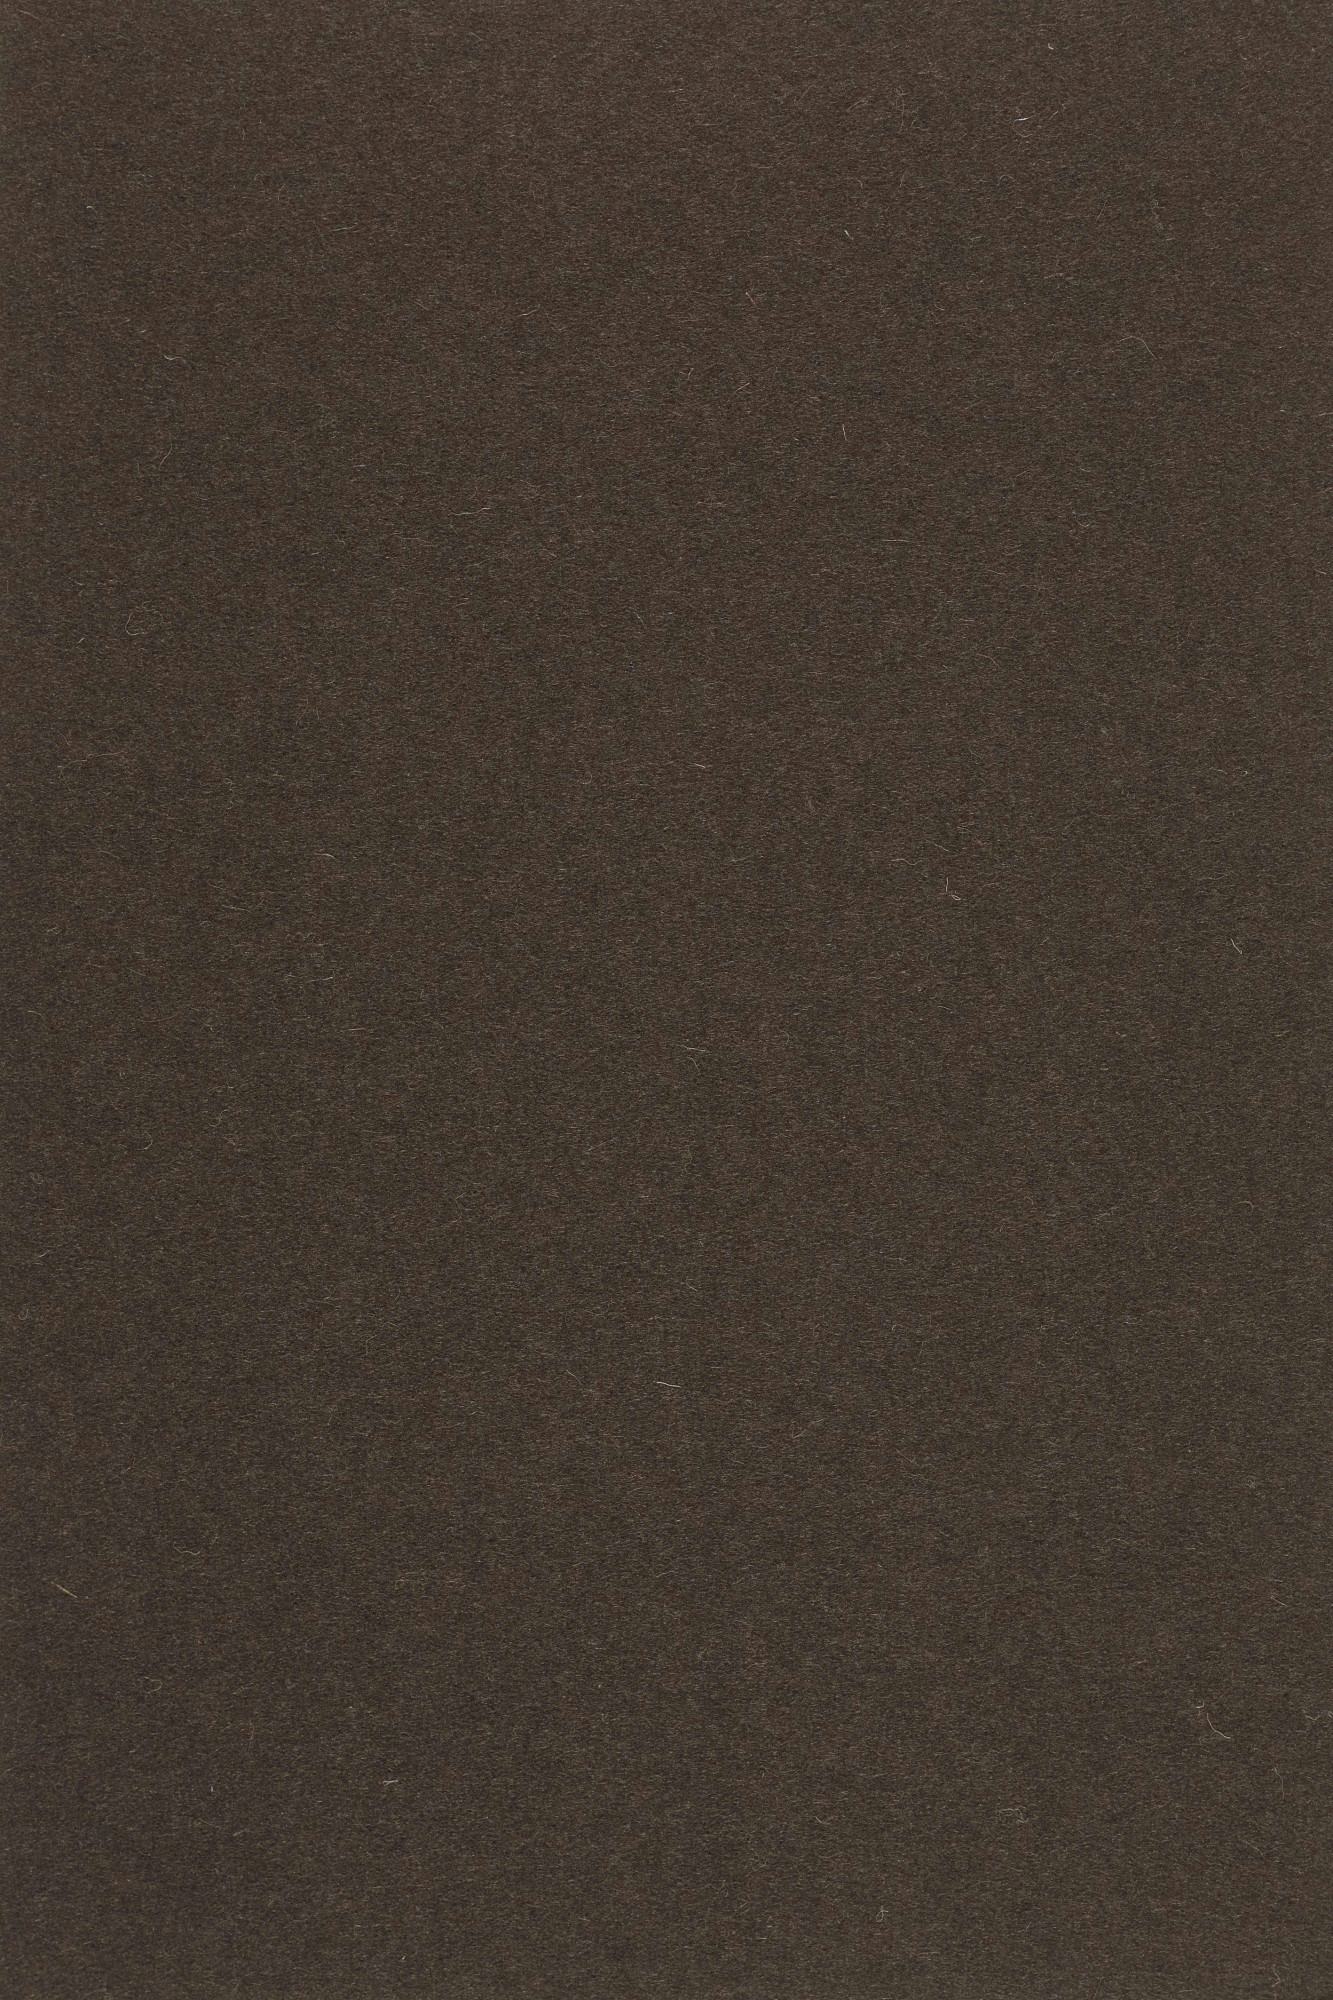 Fabric sample Divina 3 393 brown